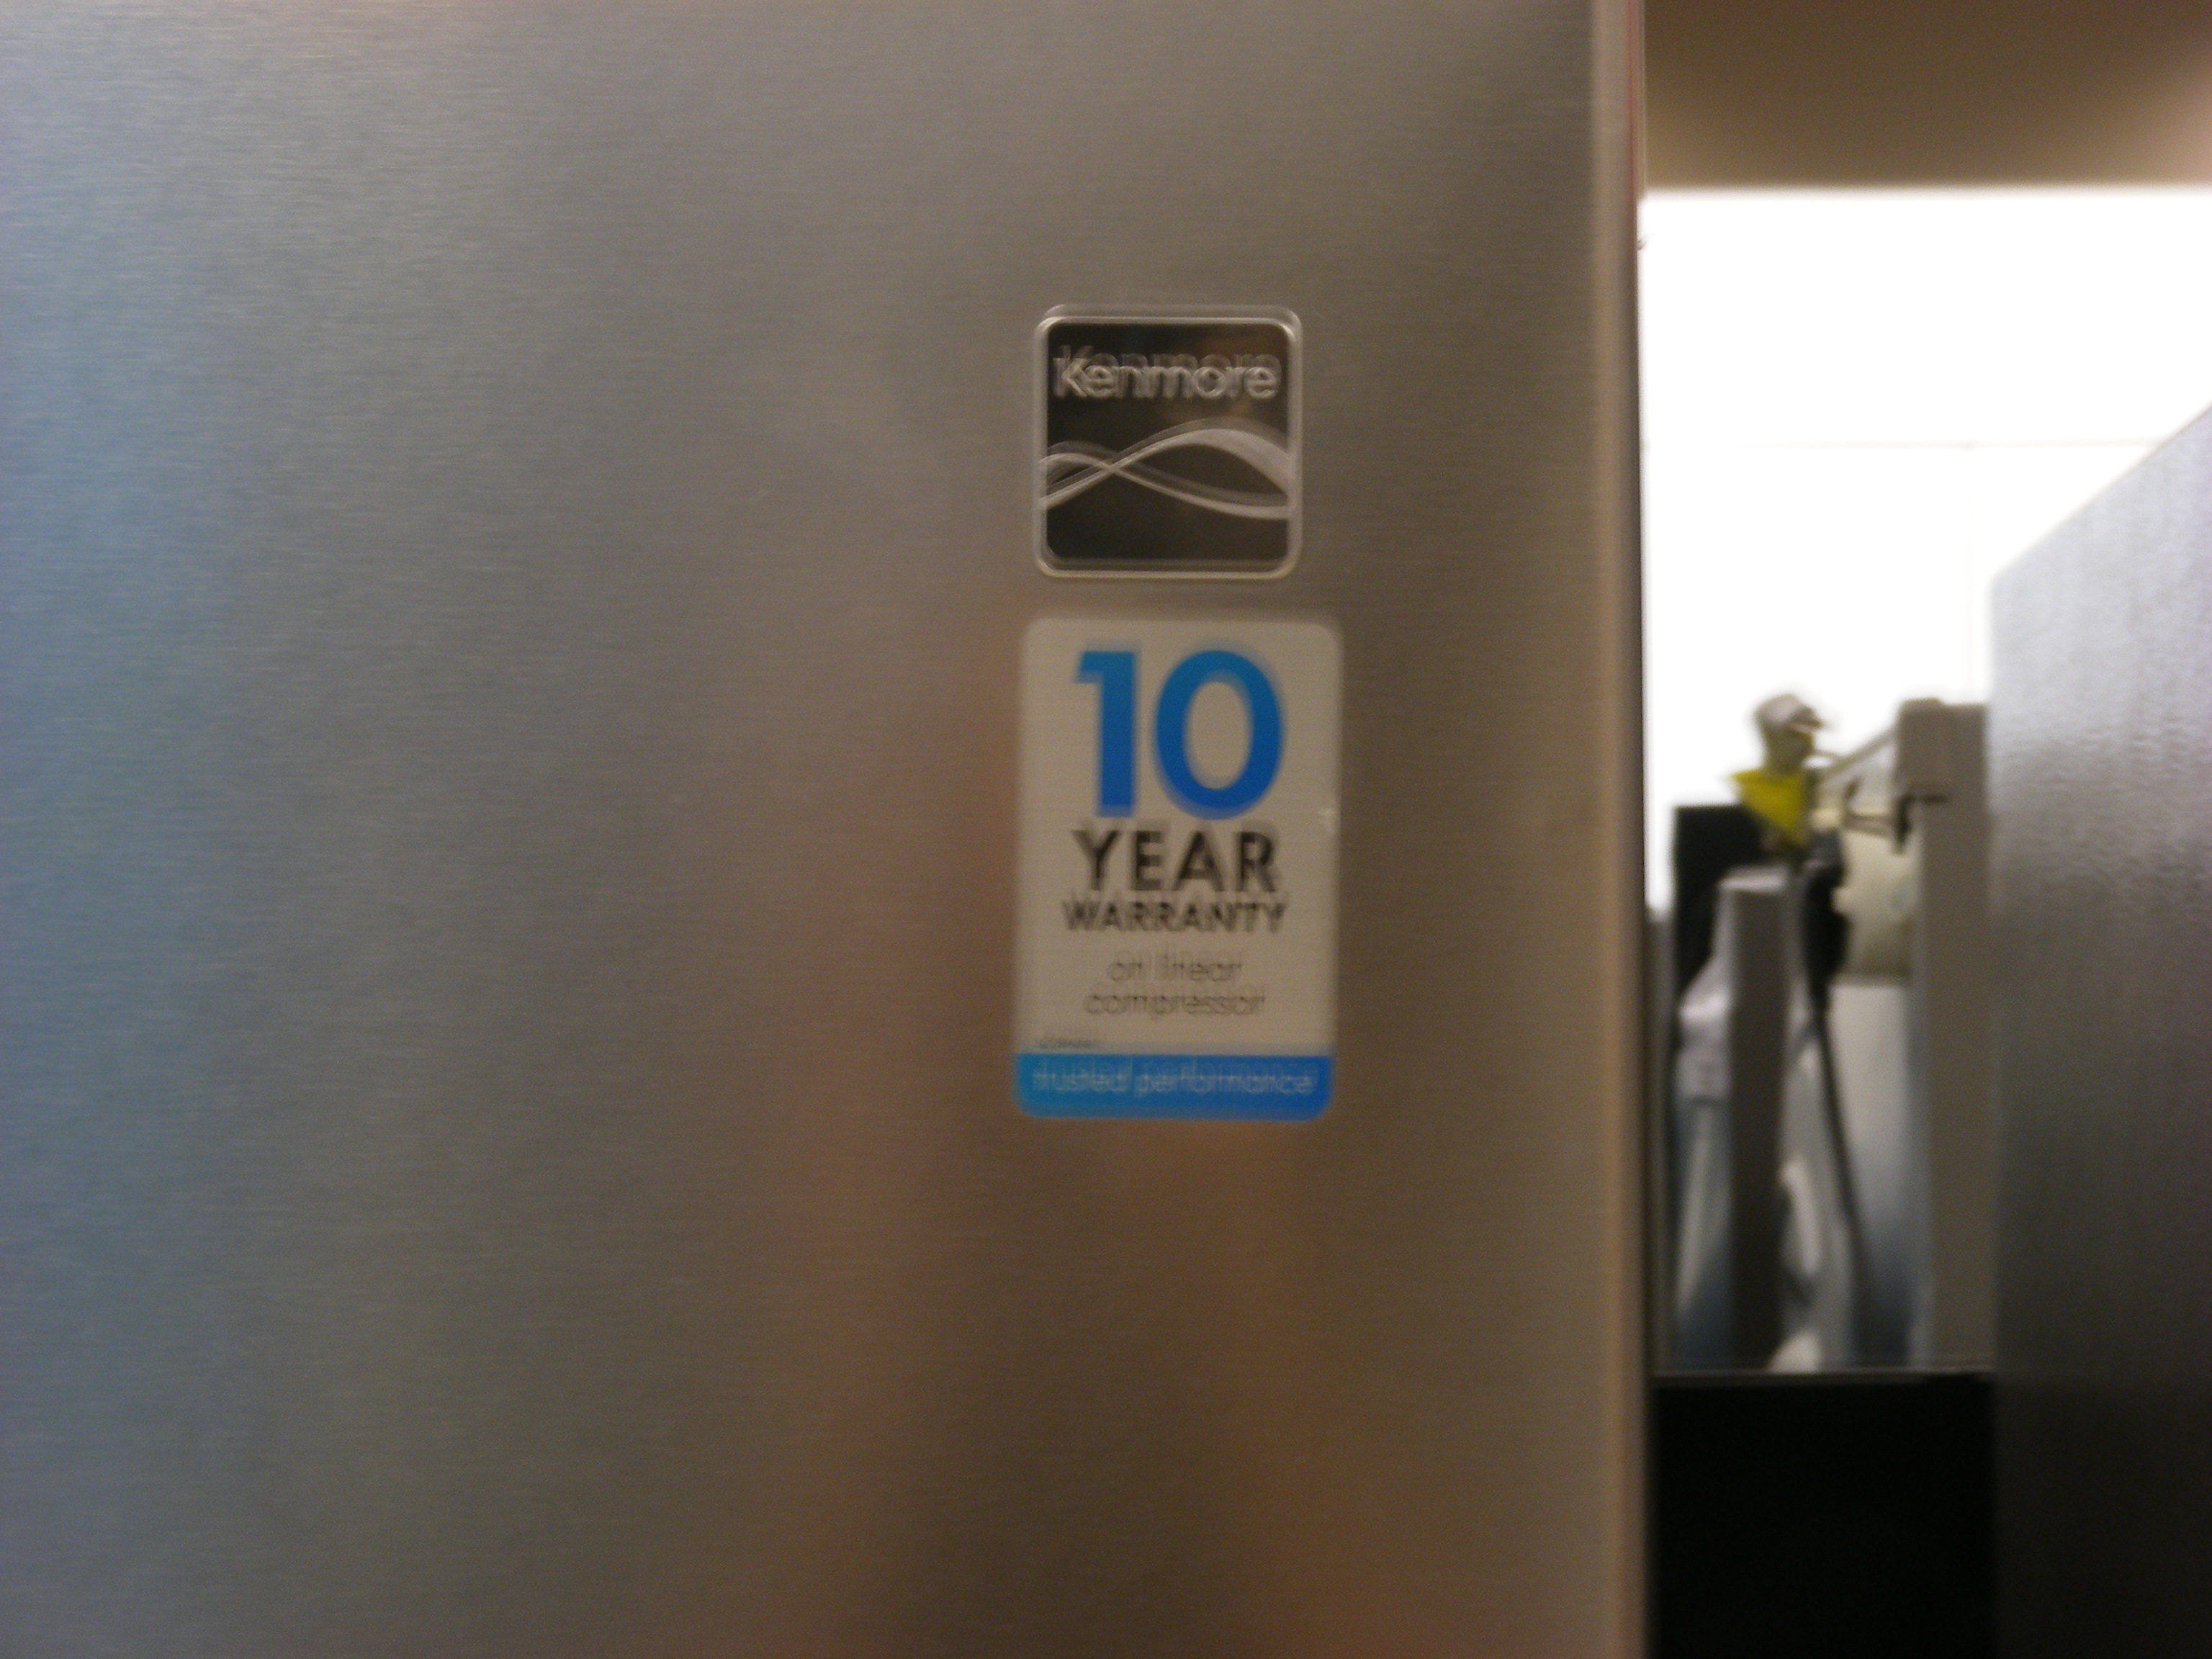 10 year compressor warranty tag